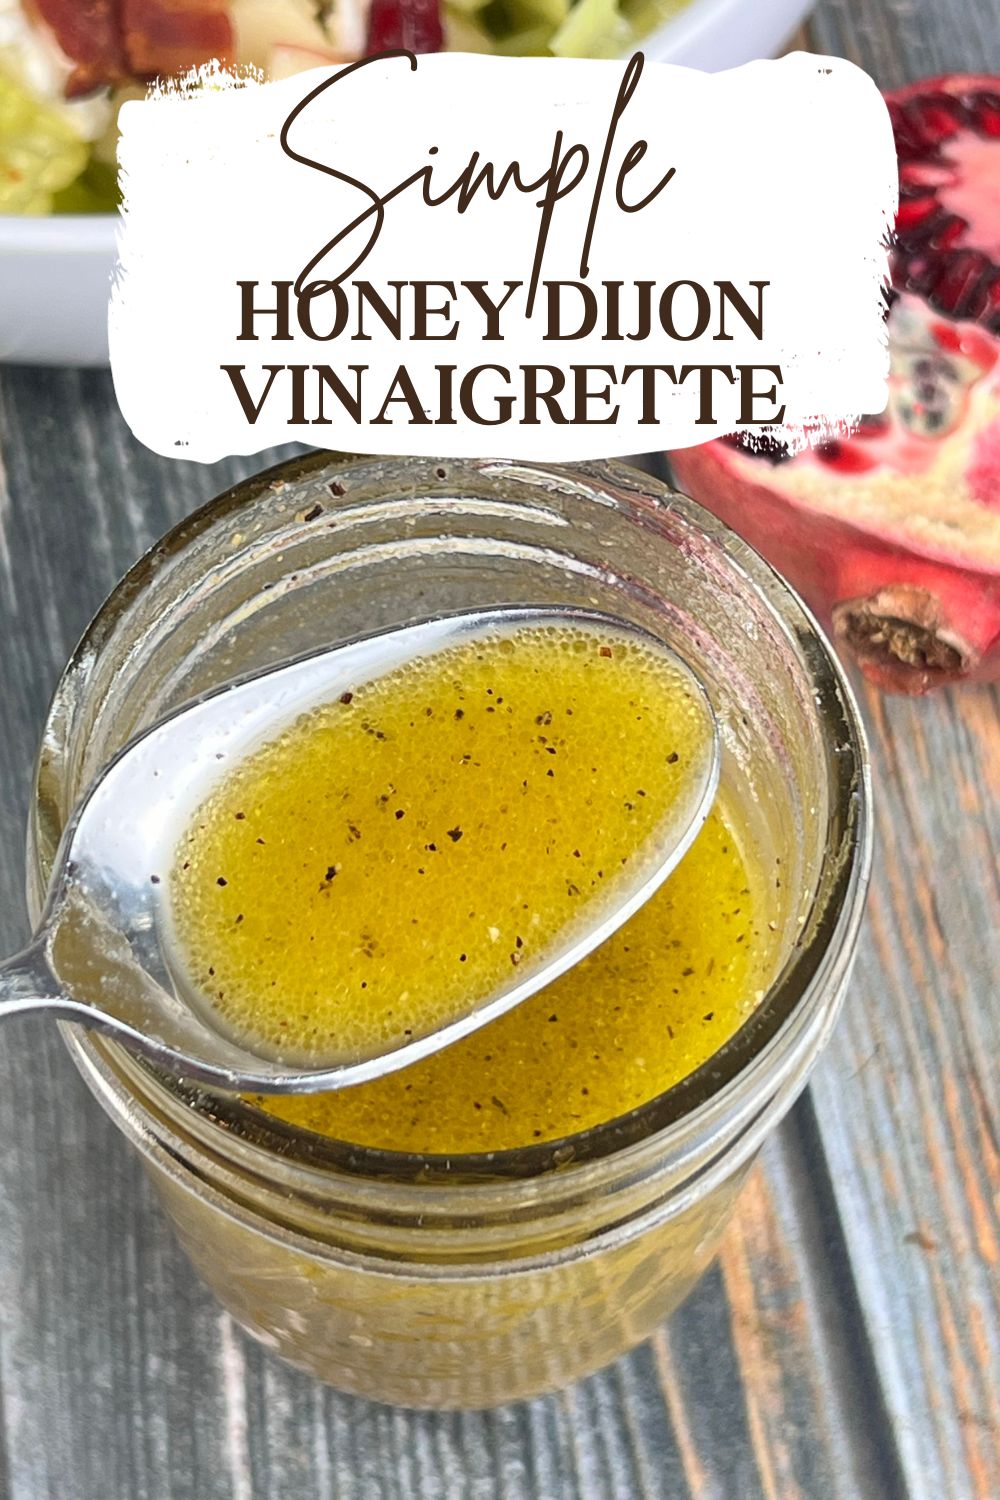 Simple Honey Dijon Vinaigrette via @preventionrd